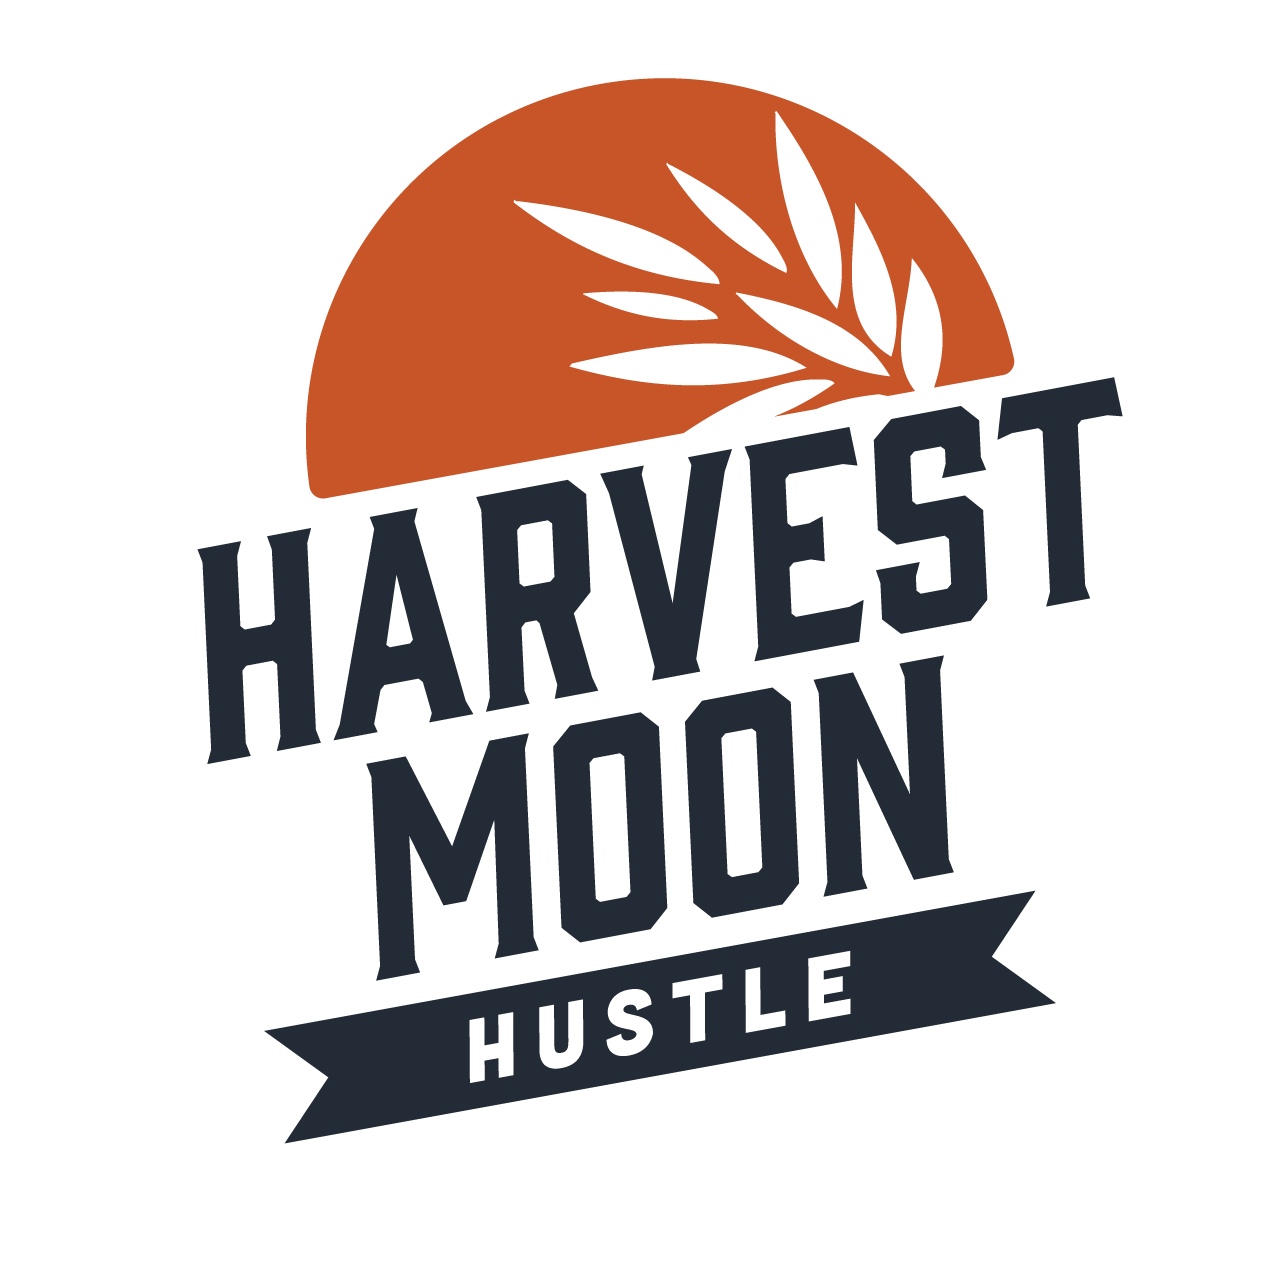 Harvest Moon Hustle logo on RaceRaves